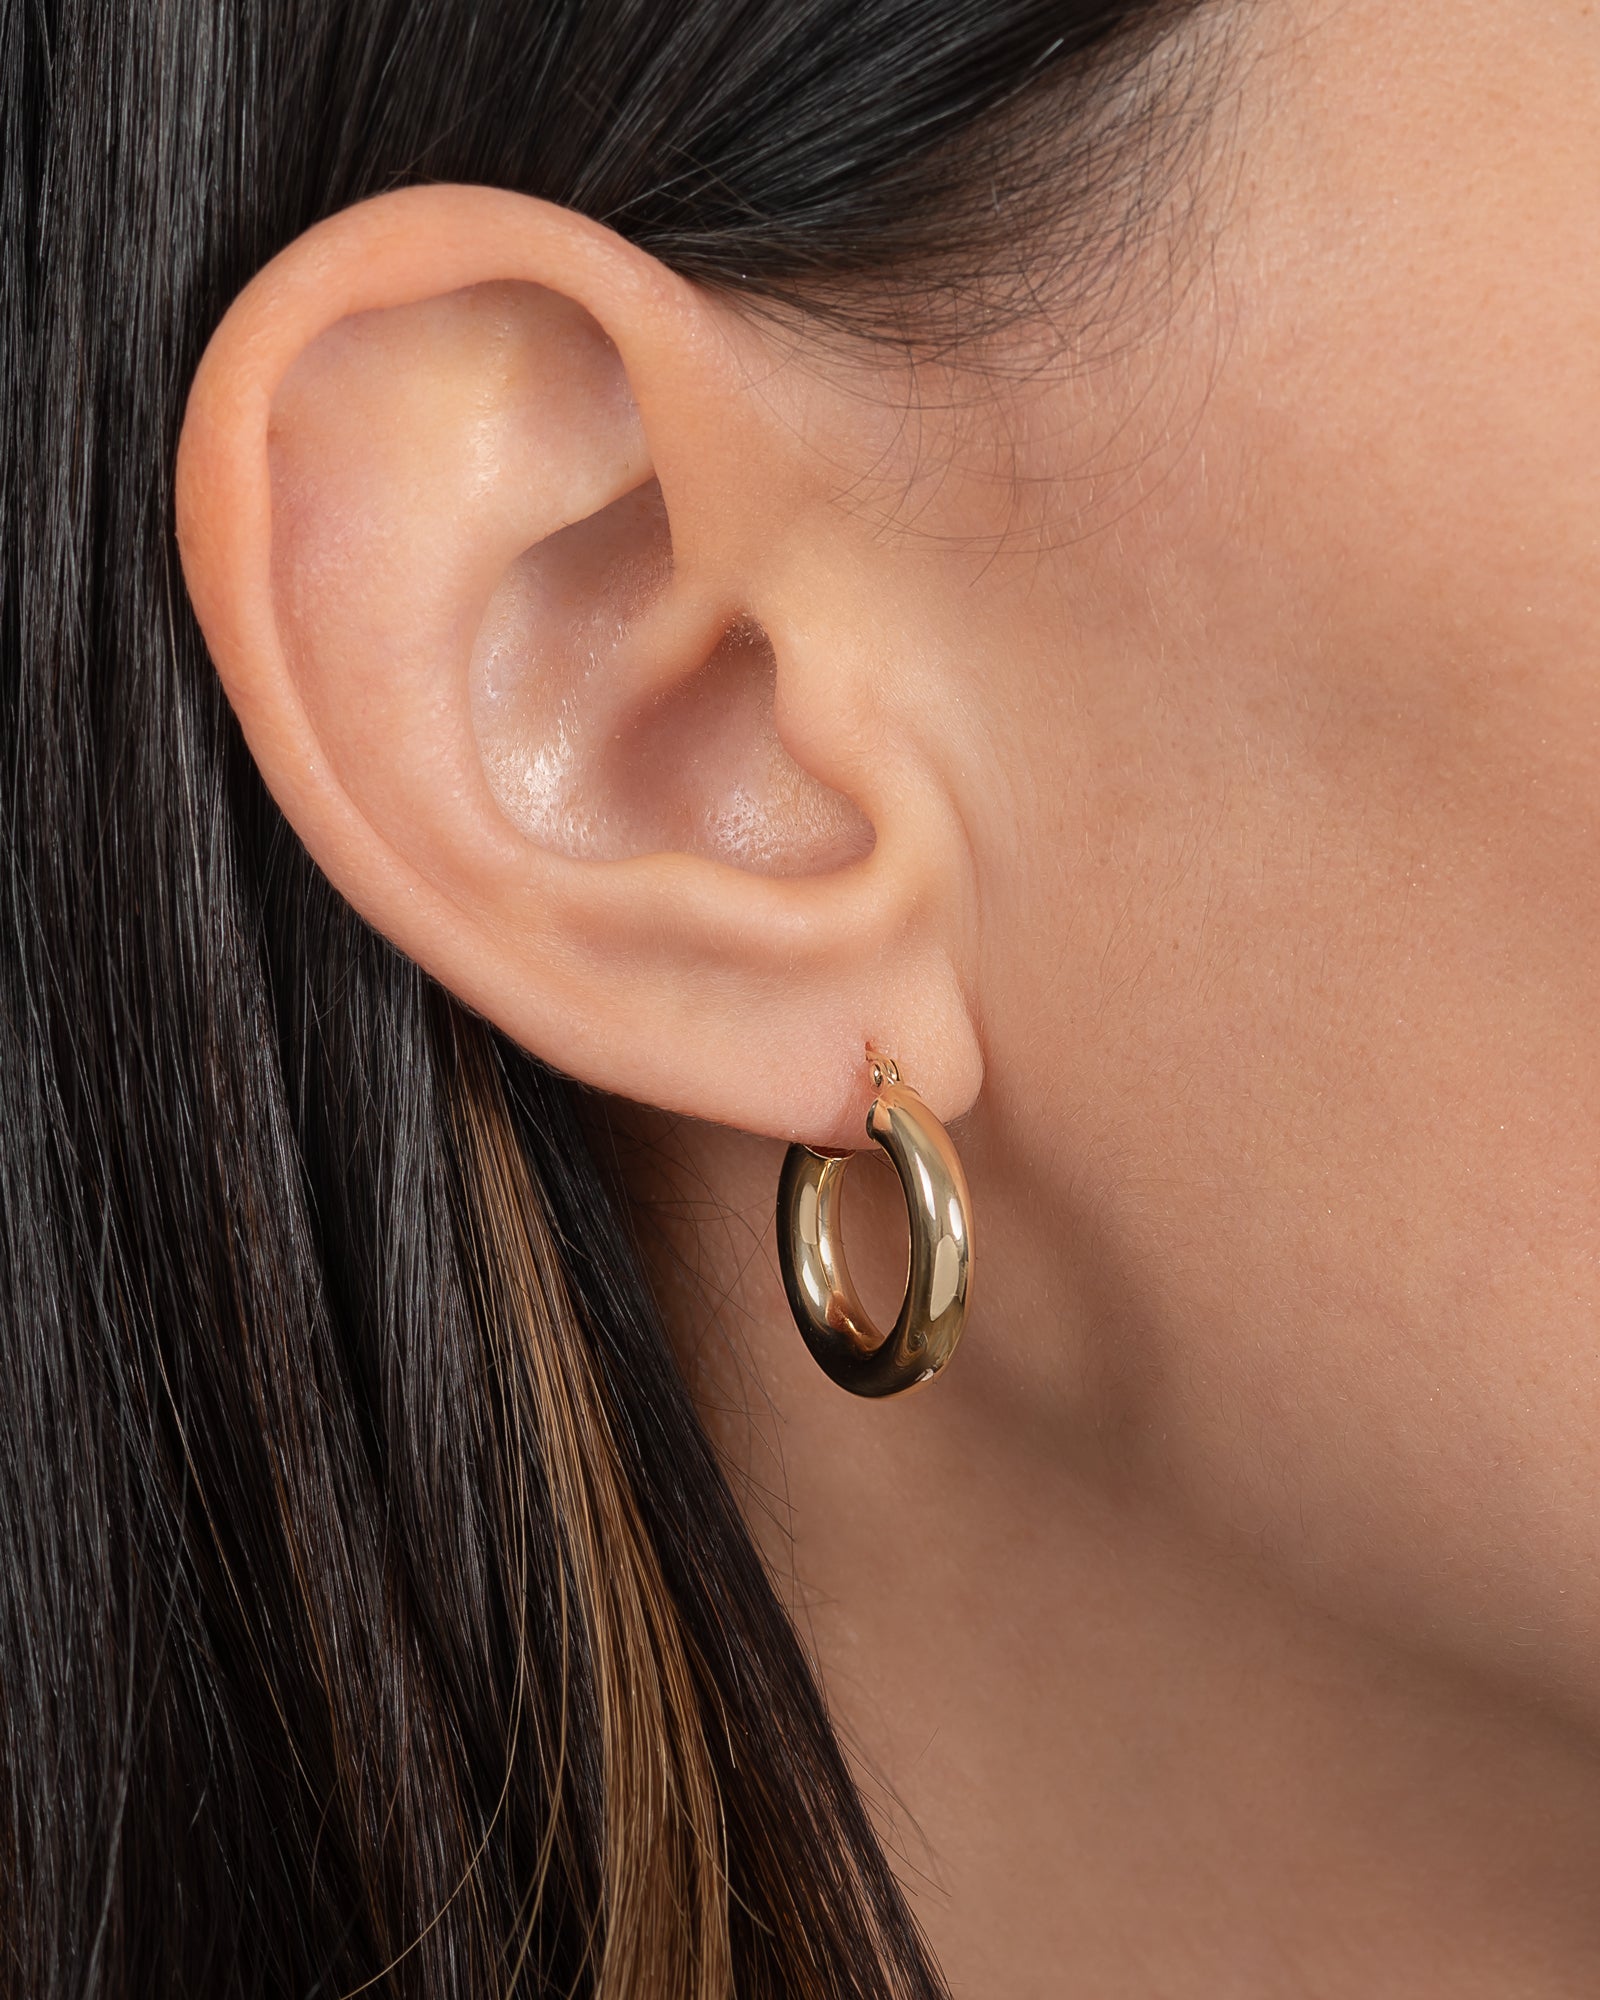 Snake Earrings, Gold Dangle Earrings, Dainty Silver Drop Earrings, Gold  Huggie Hoops, Small Hoop Earrings, Minimalist Earrings, HADLEY HOOPS - Etsy  | Diamond shape earrings, Minimalist earrings, Gold earrings dangle